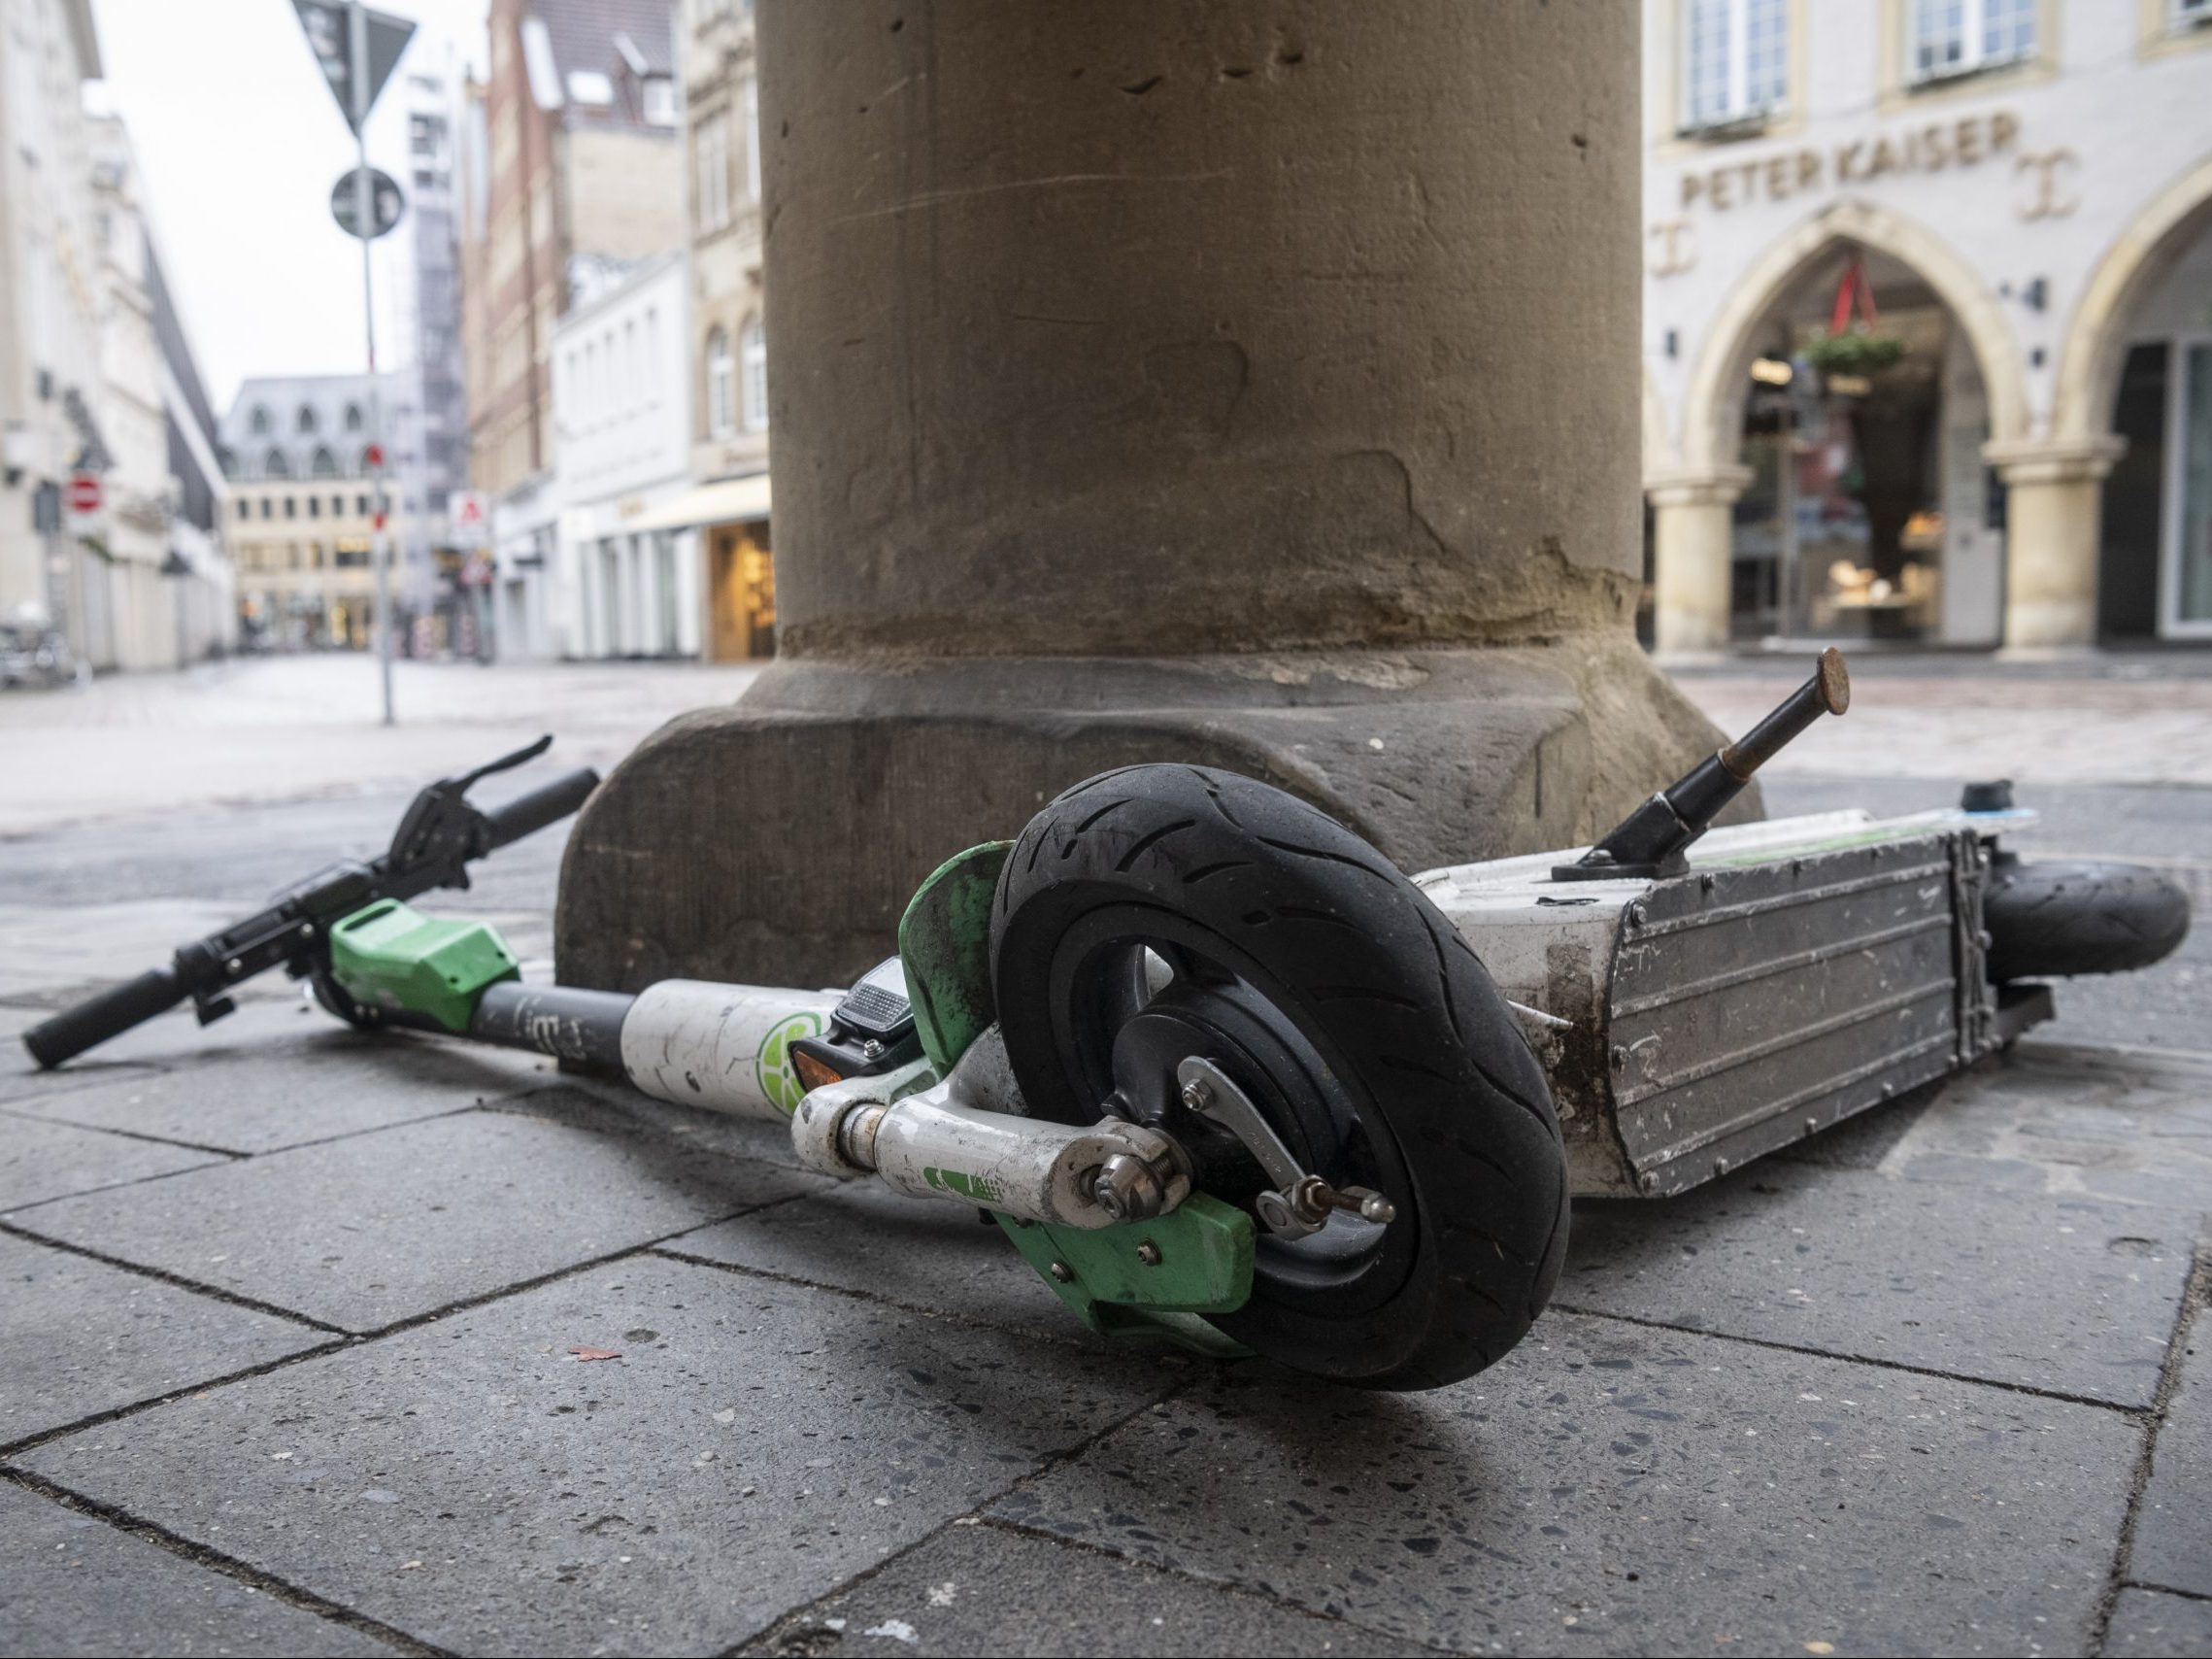 Unachtsam abgestellter E-Roller in Stadt als Unfallrisiko